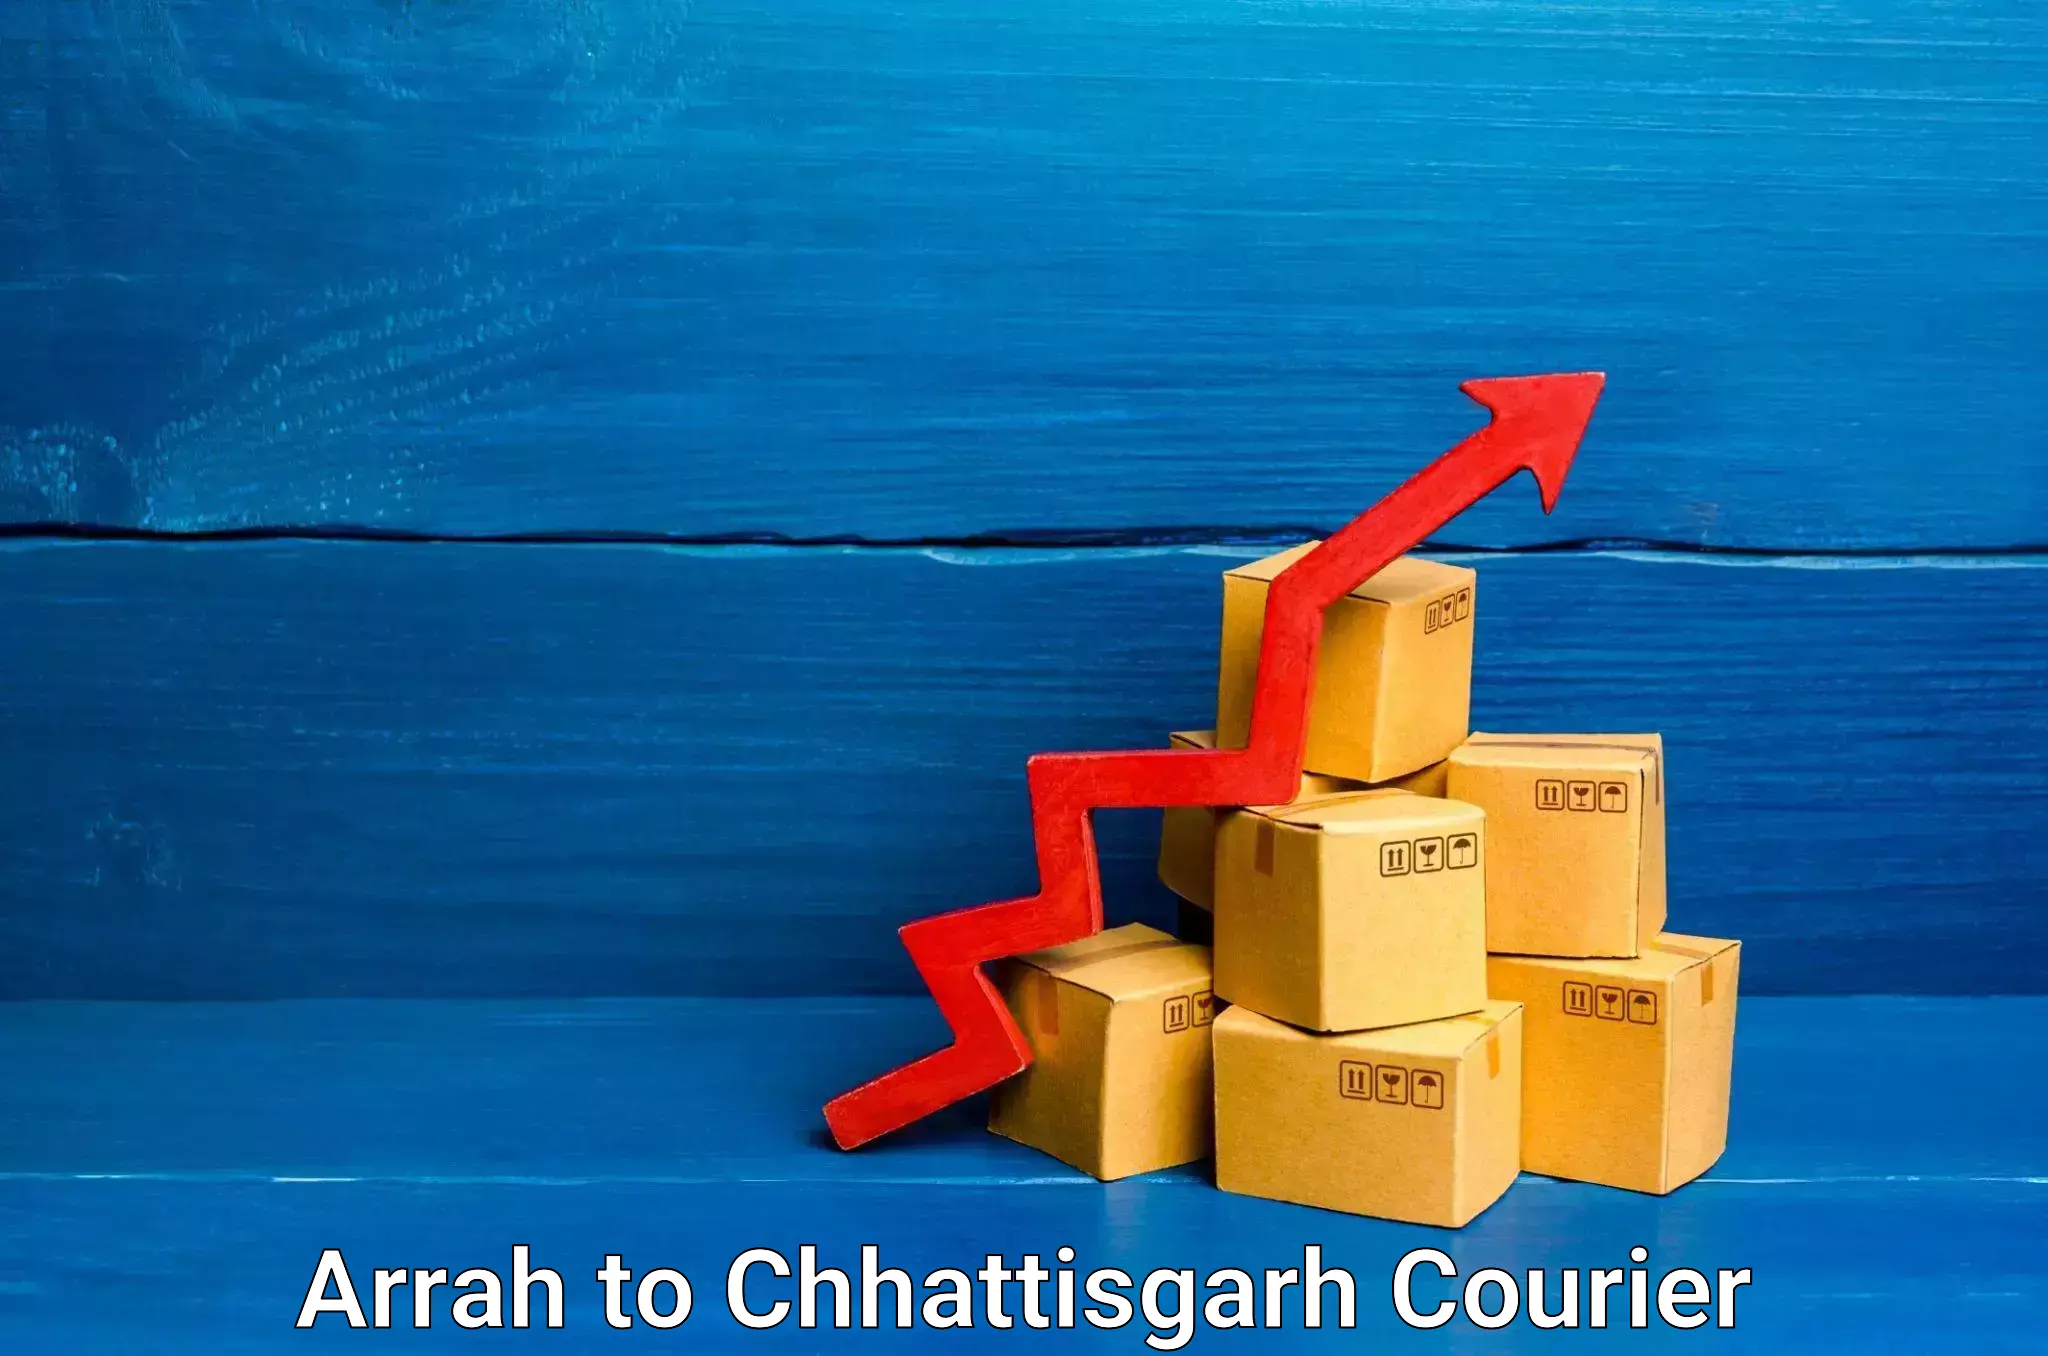 Household transport experts Arrah to Chhattisgarh